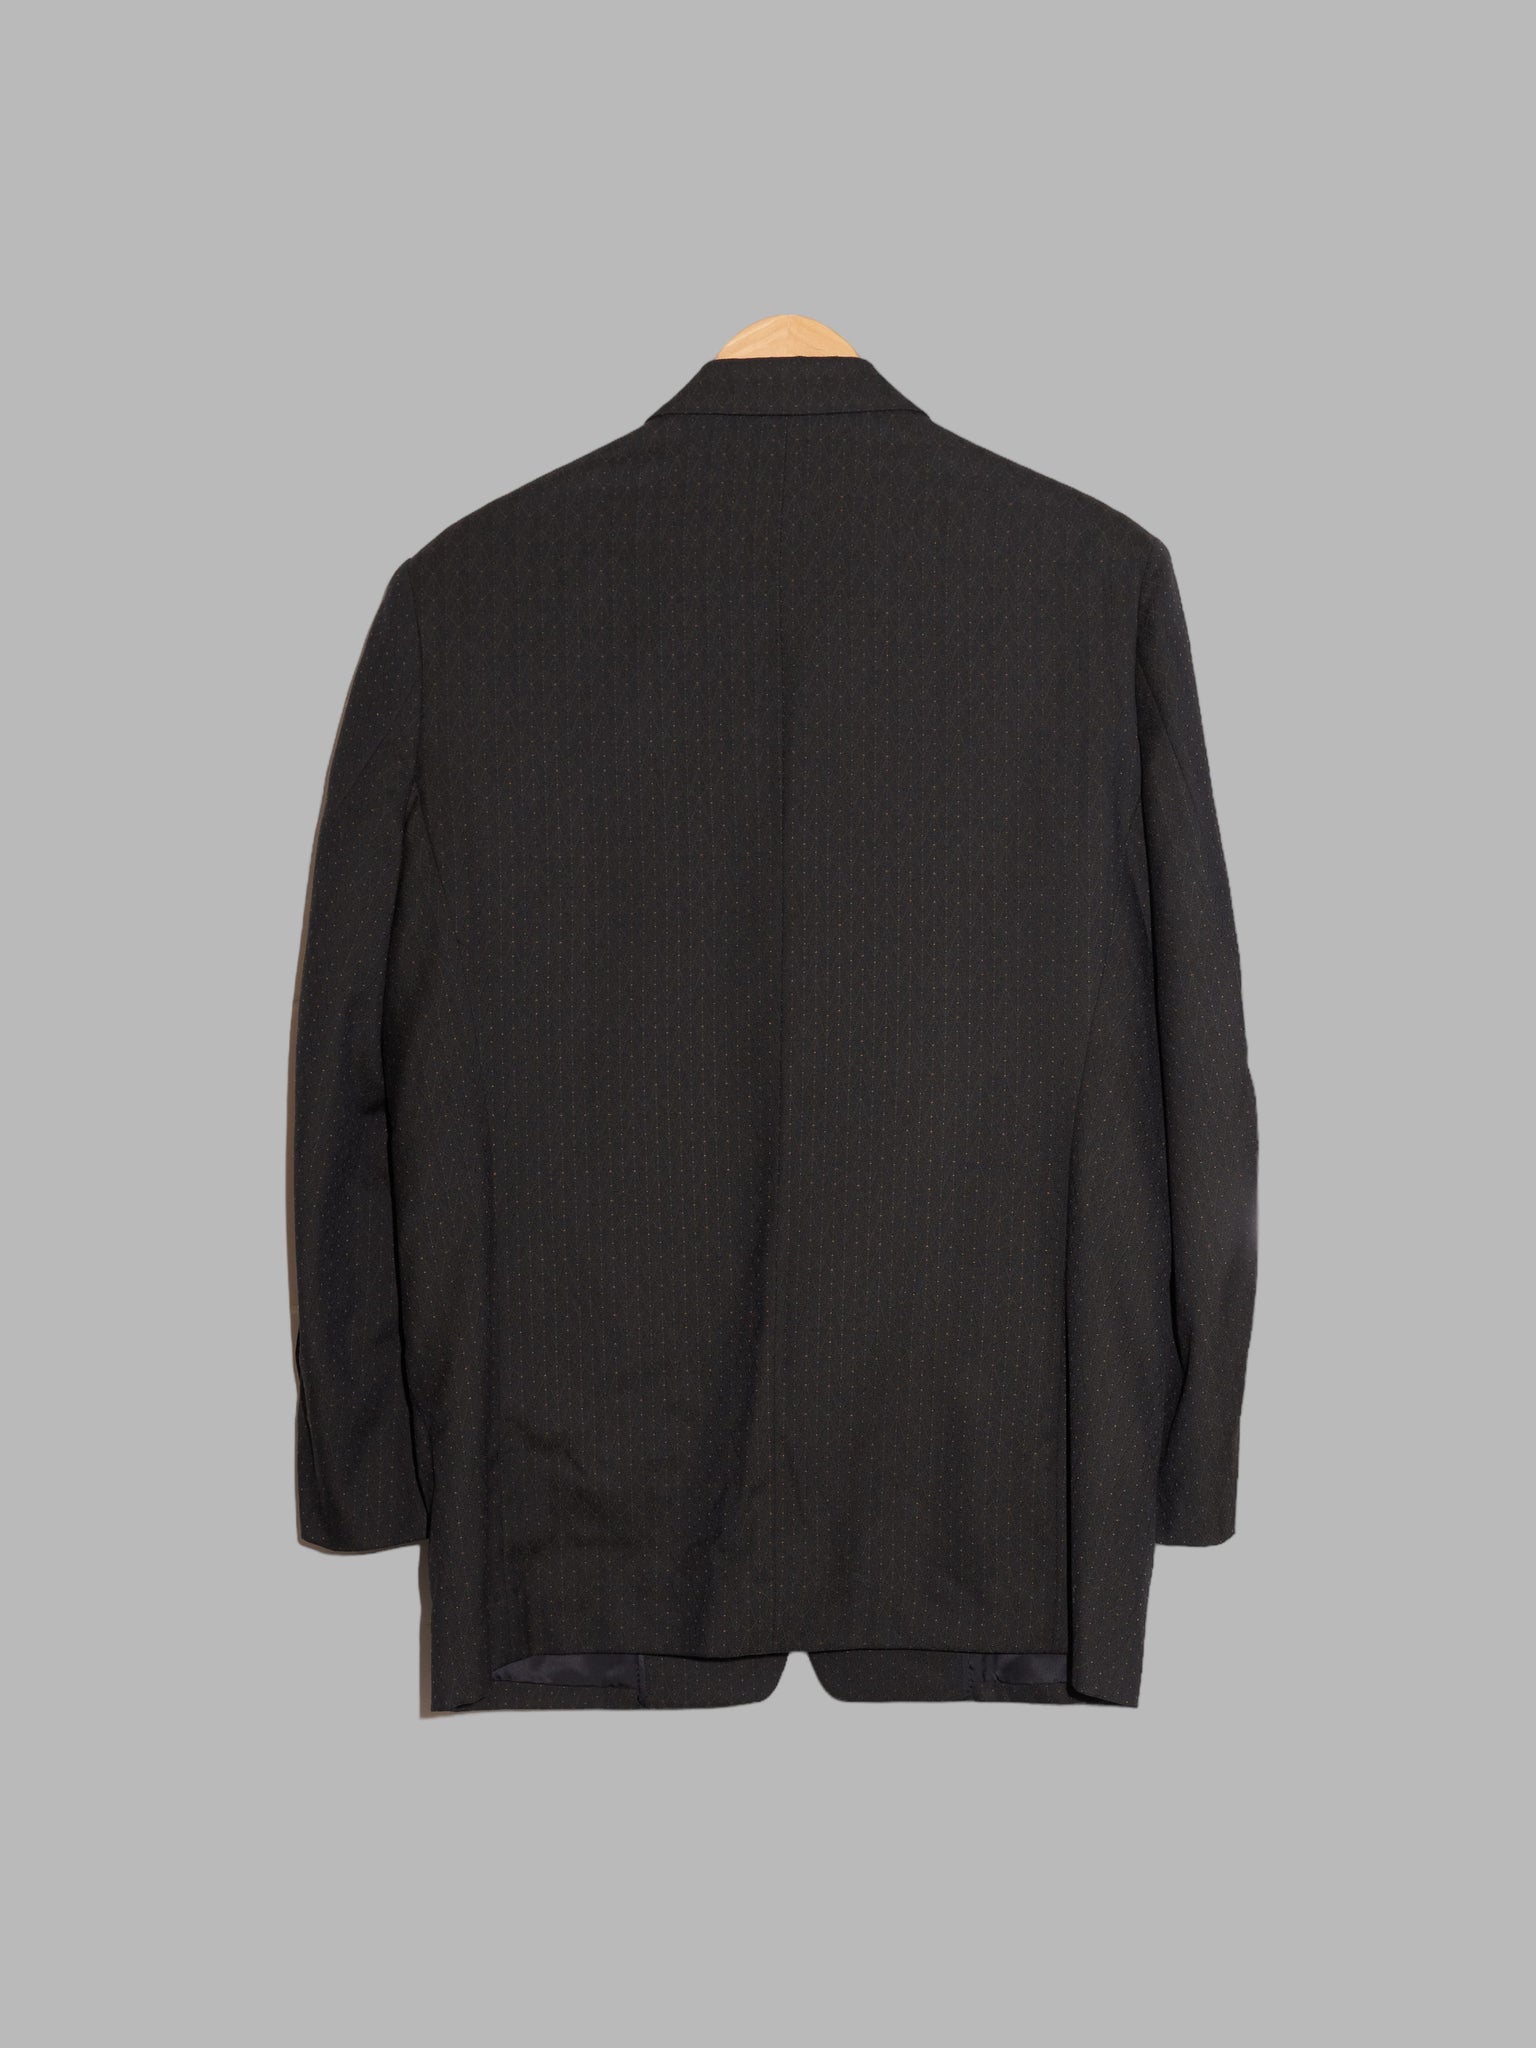 Monsieur Nicole 1980s dark grey wool dot pattern three button blazer - M